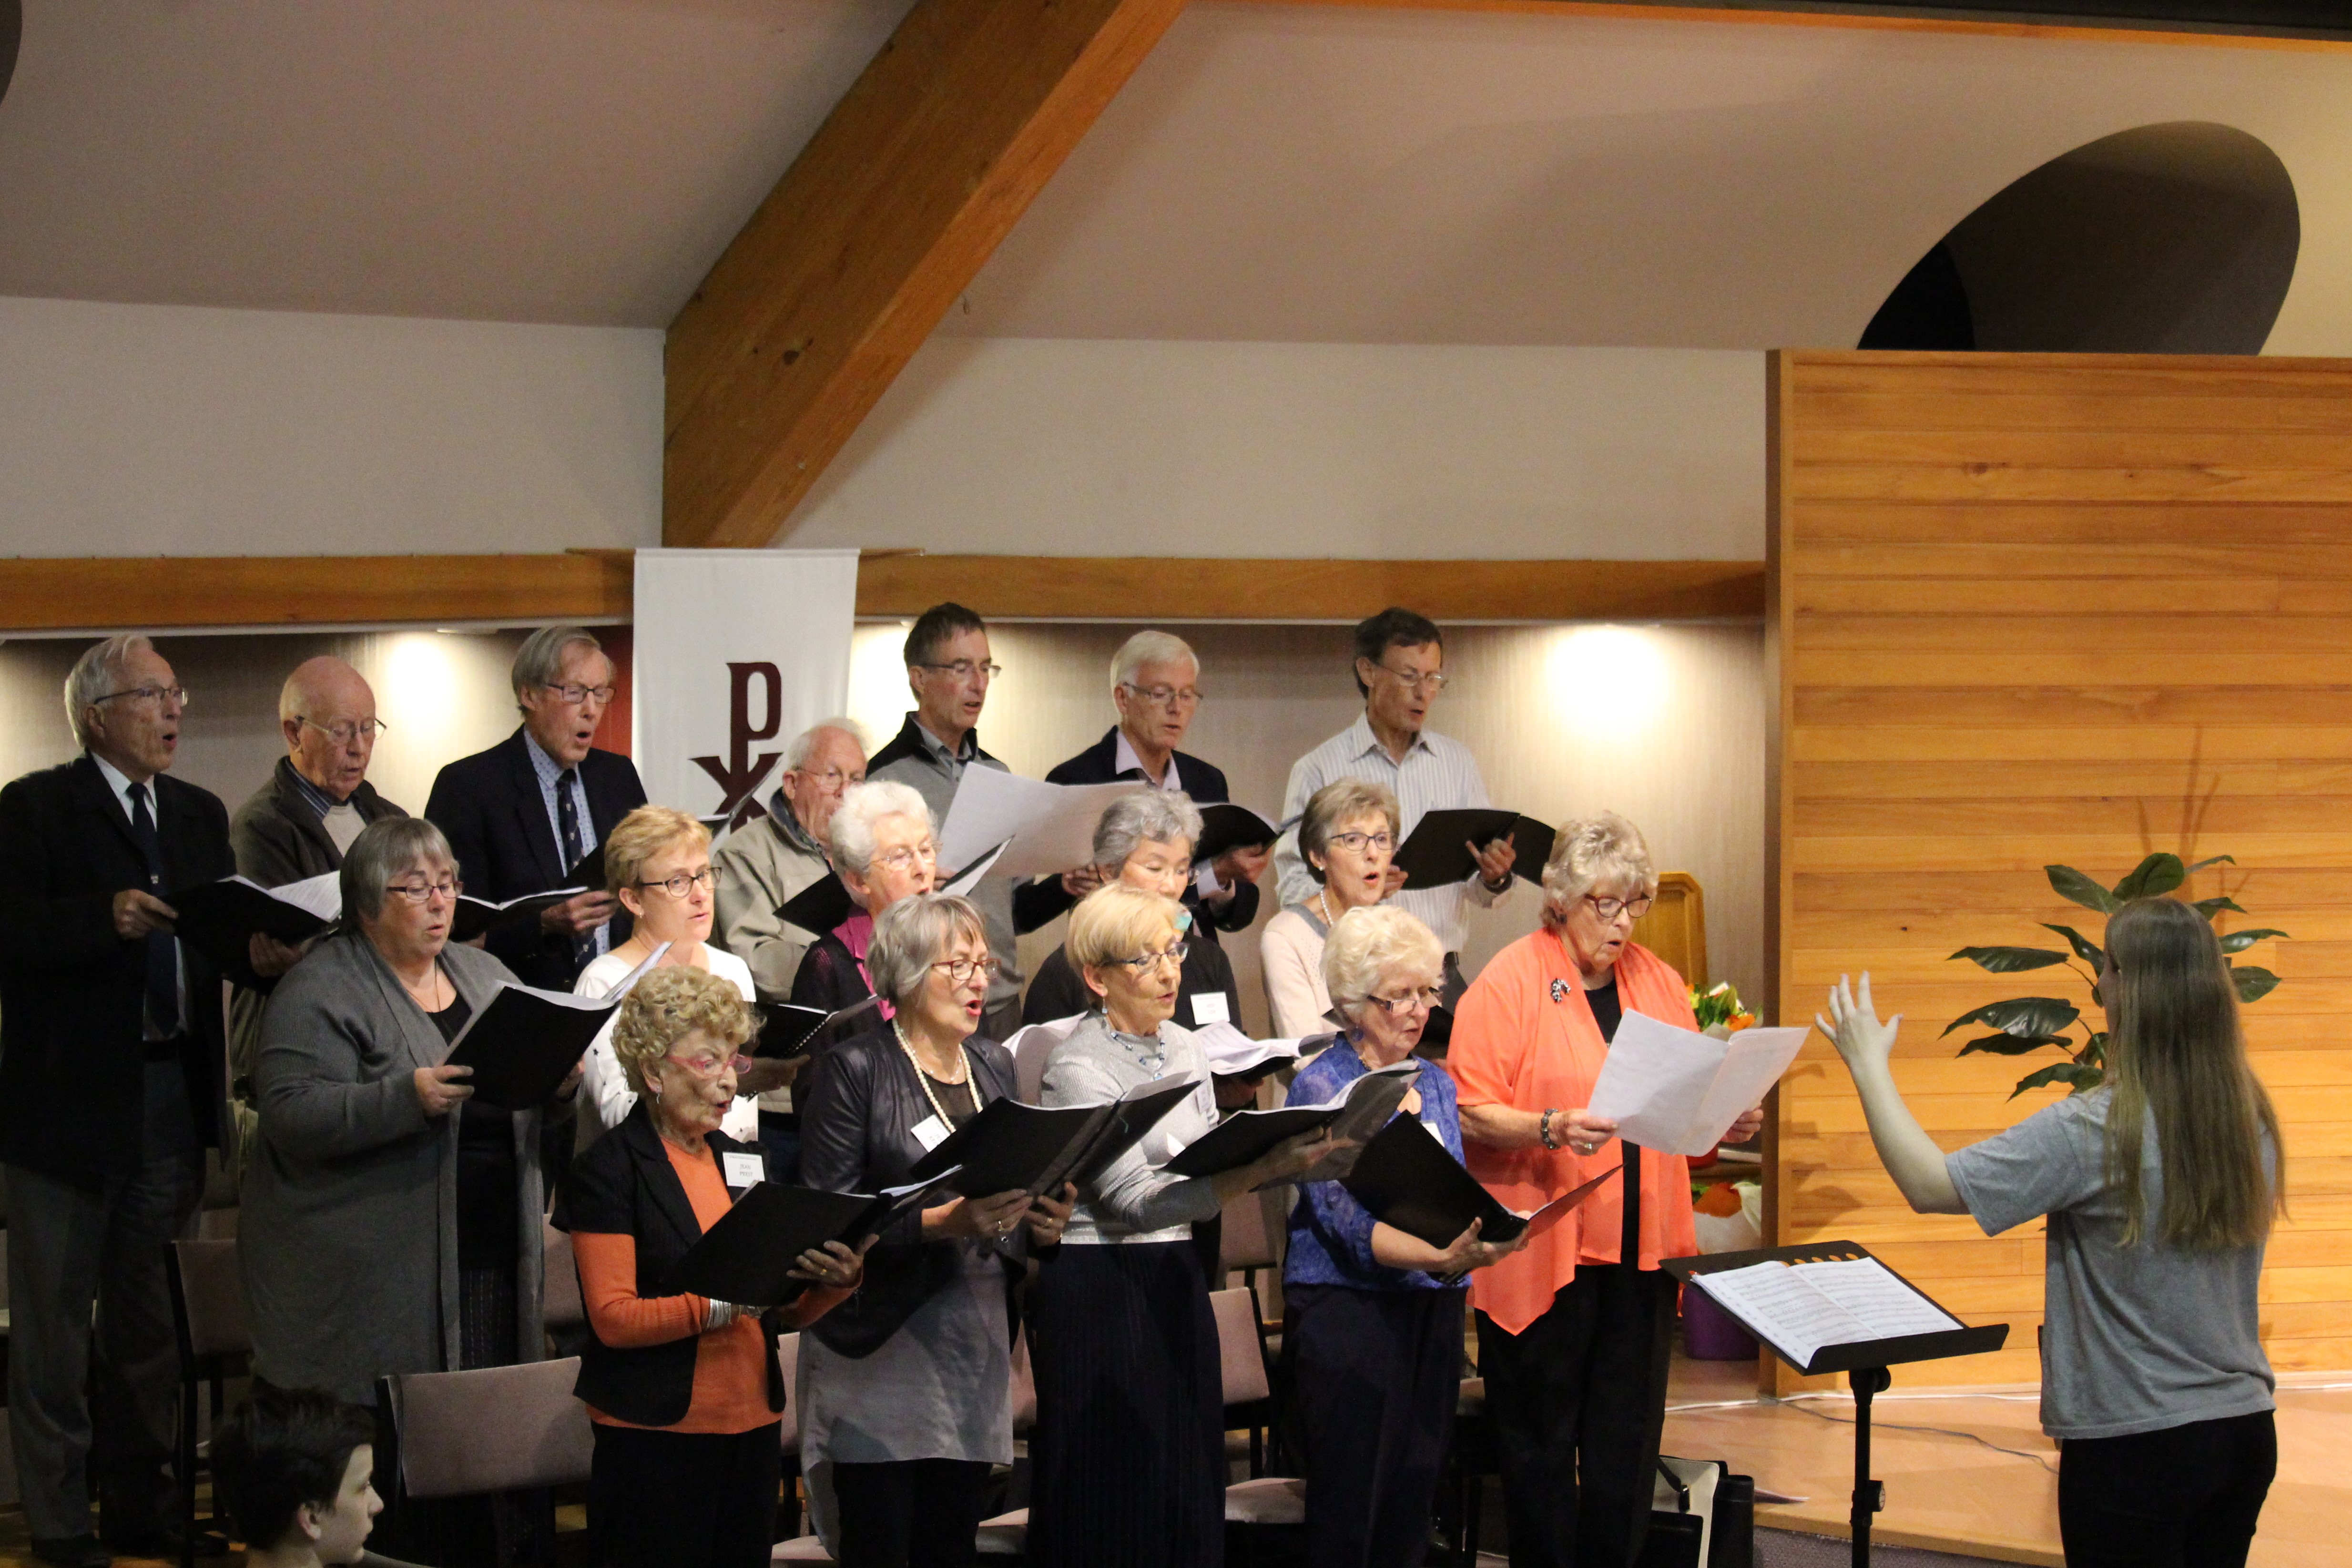 St Mark's Choir